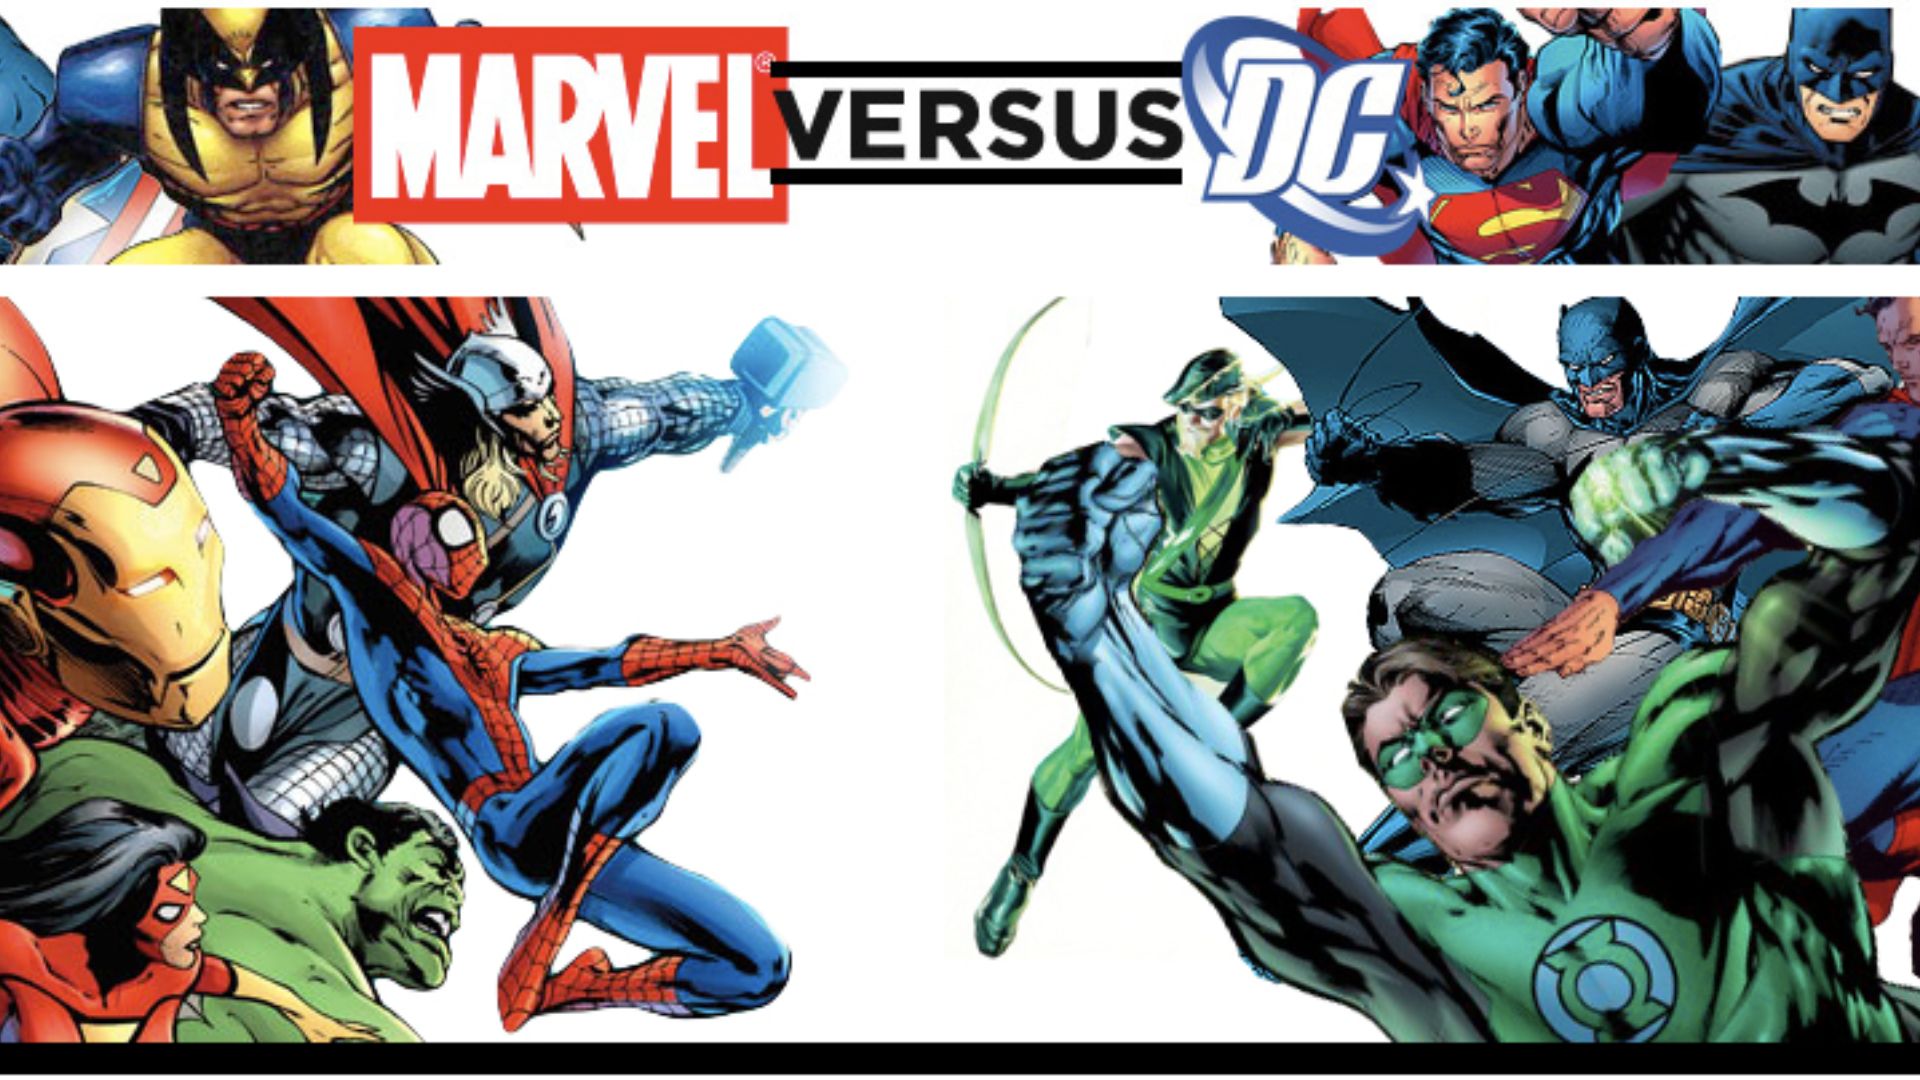 Marvel vs DC: Who Reigns Supreme in Superhero Cinema?